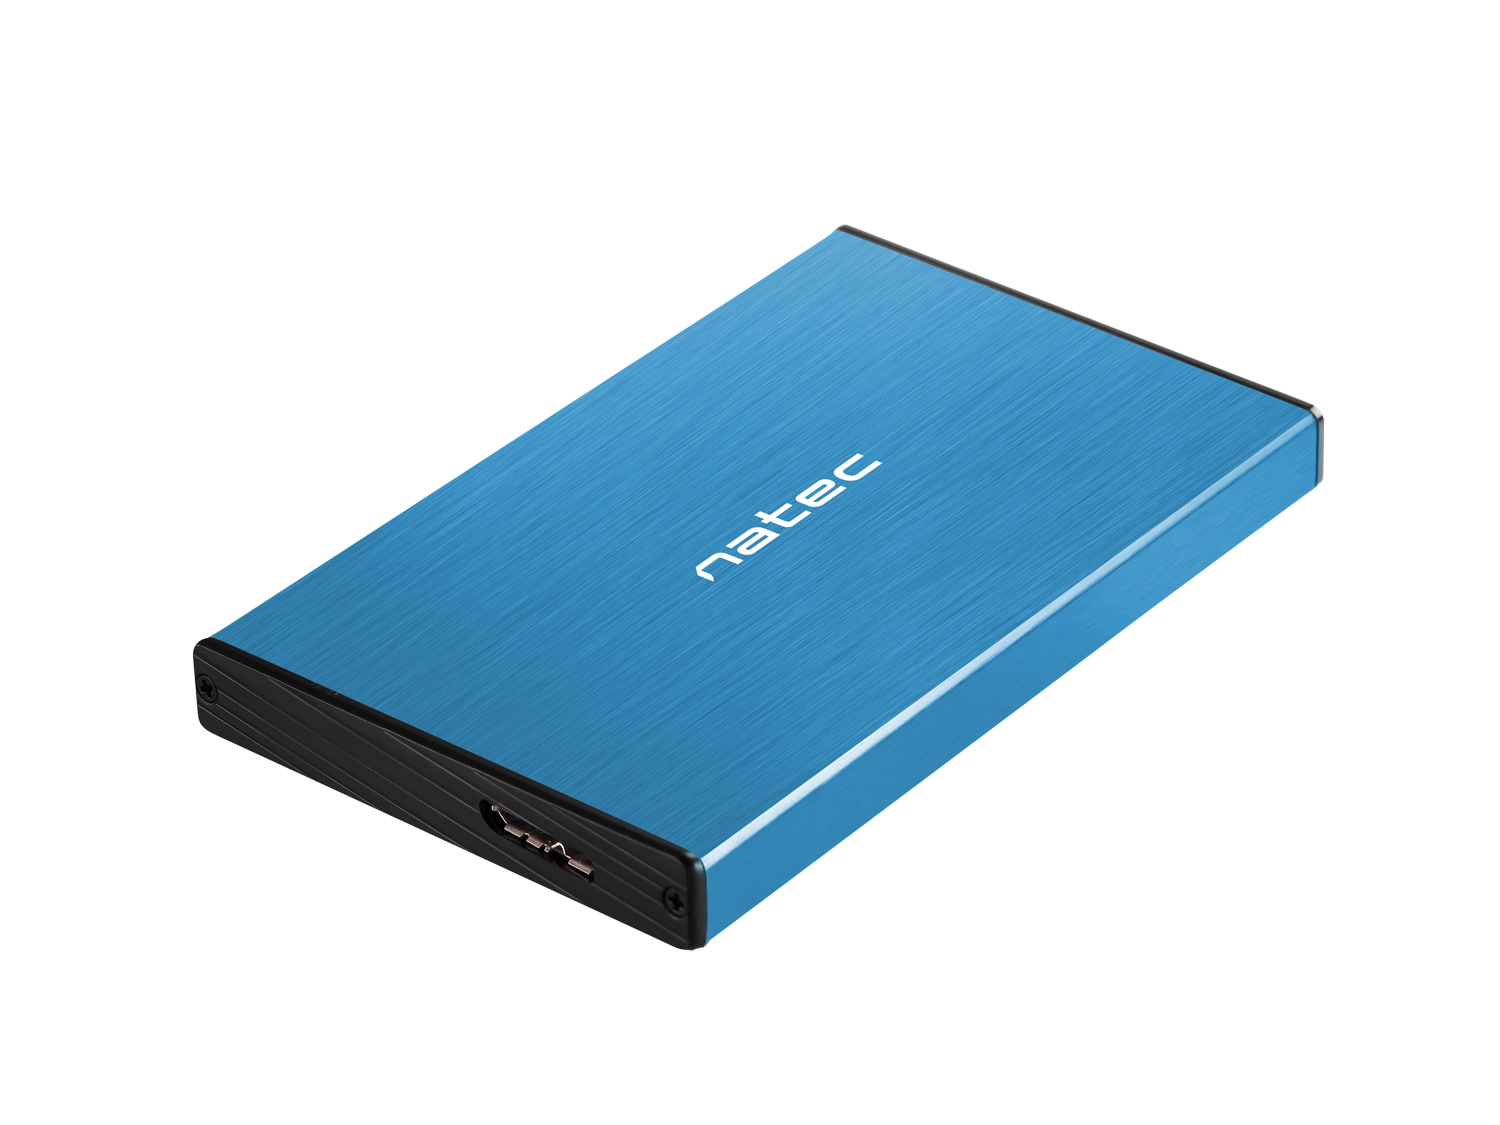 Externý box pre HDD 2, 5" USB 3.0 Natec Rhino Go, modrý, hliníkové telo 